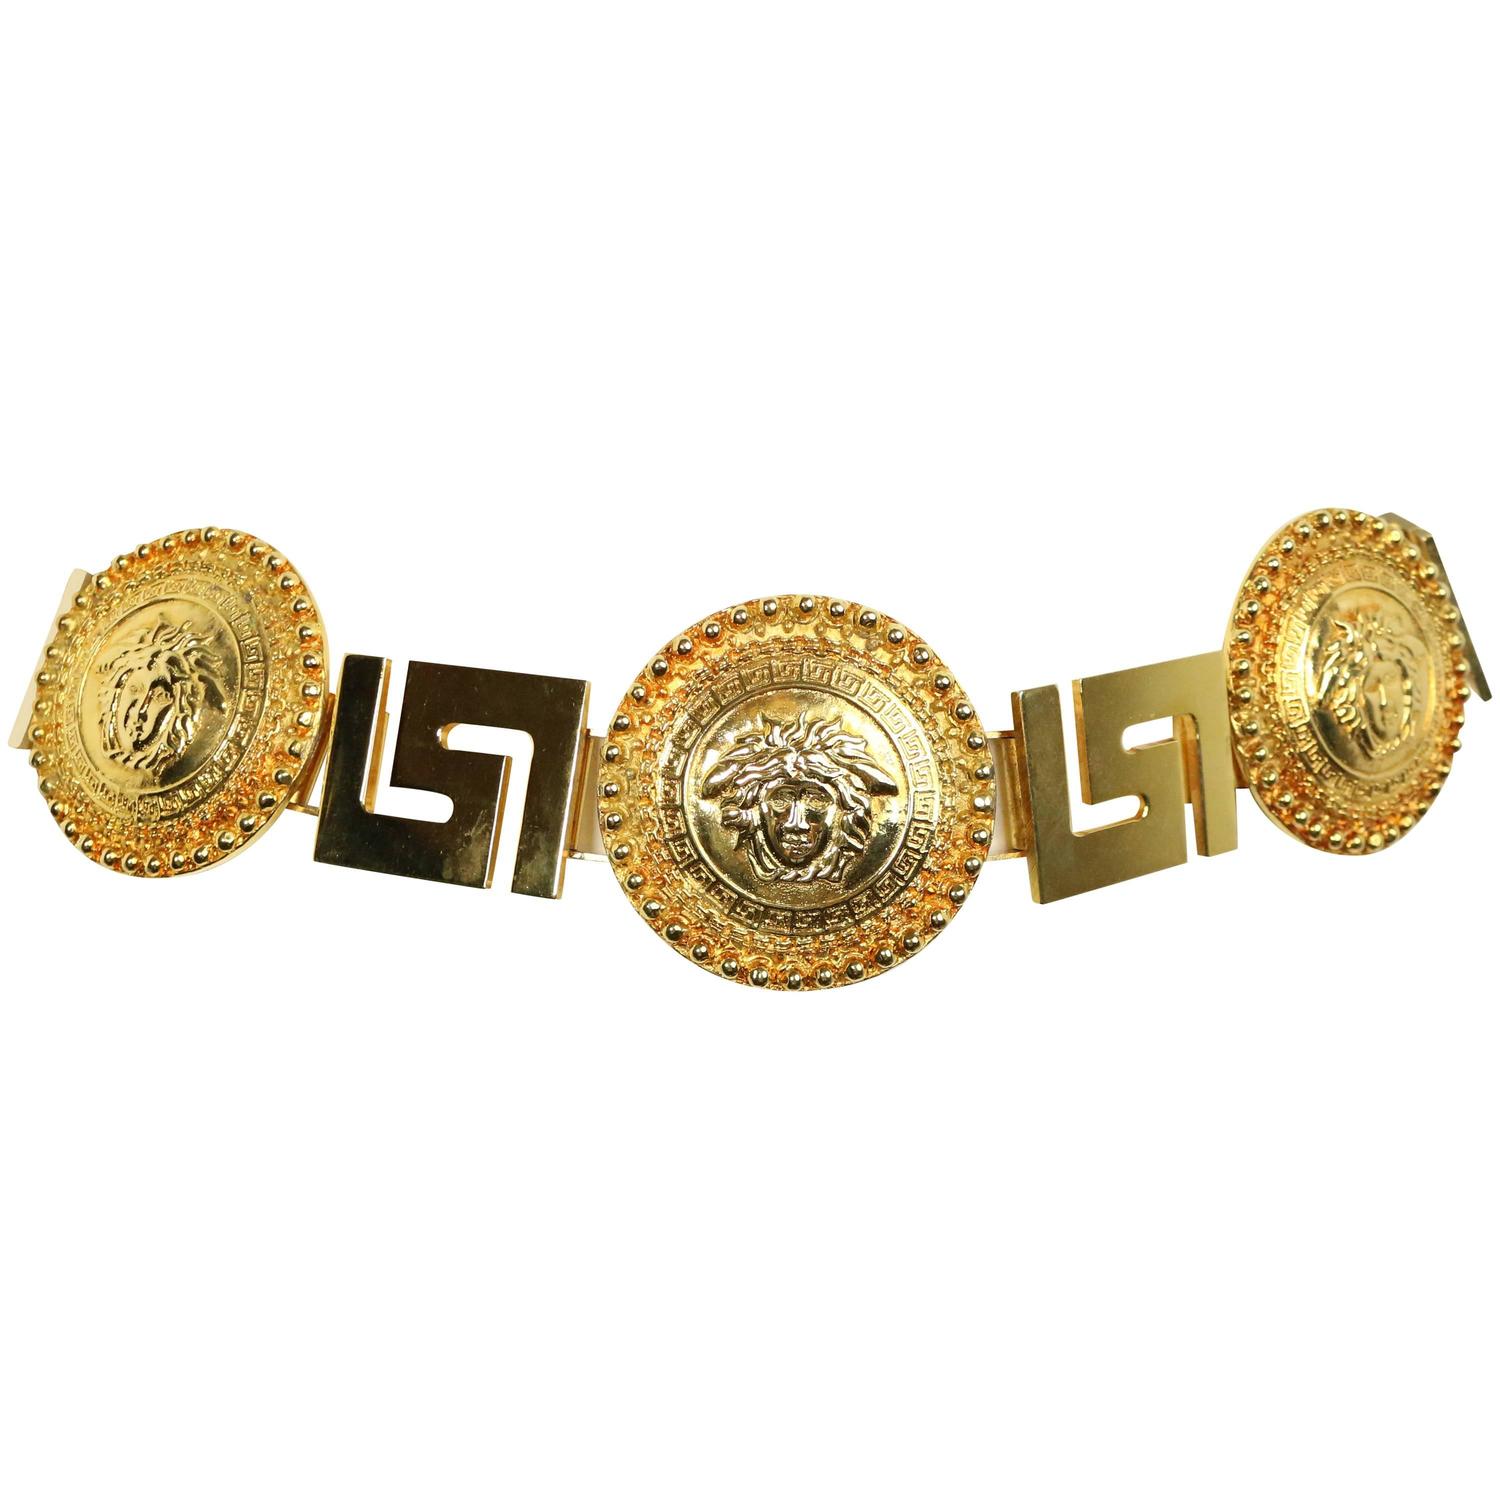 versace gold chain belt